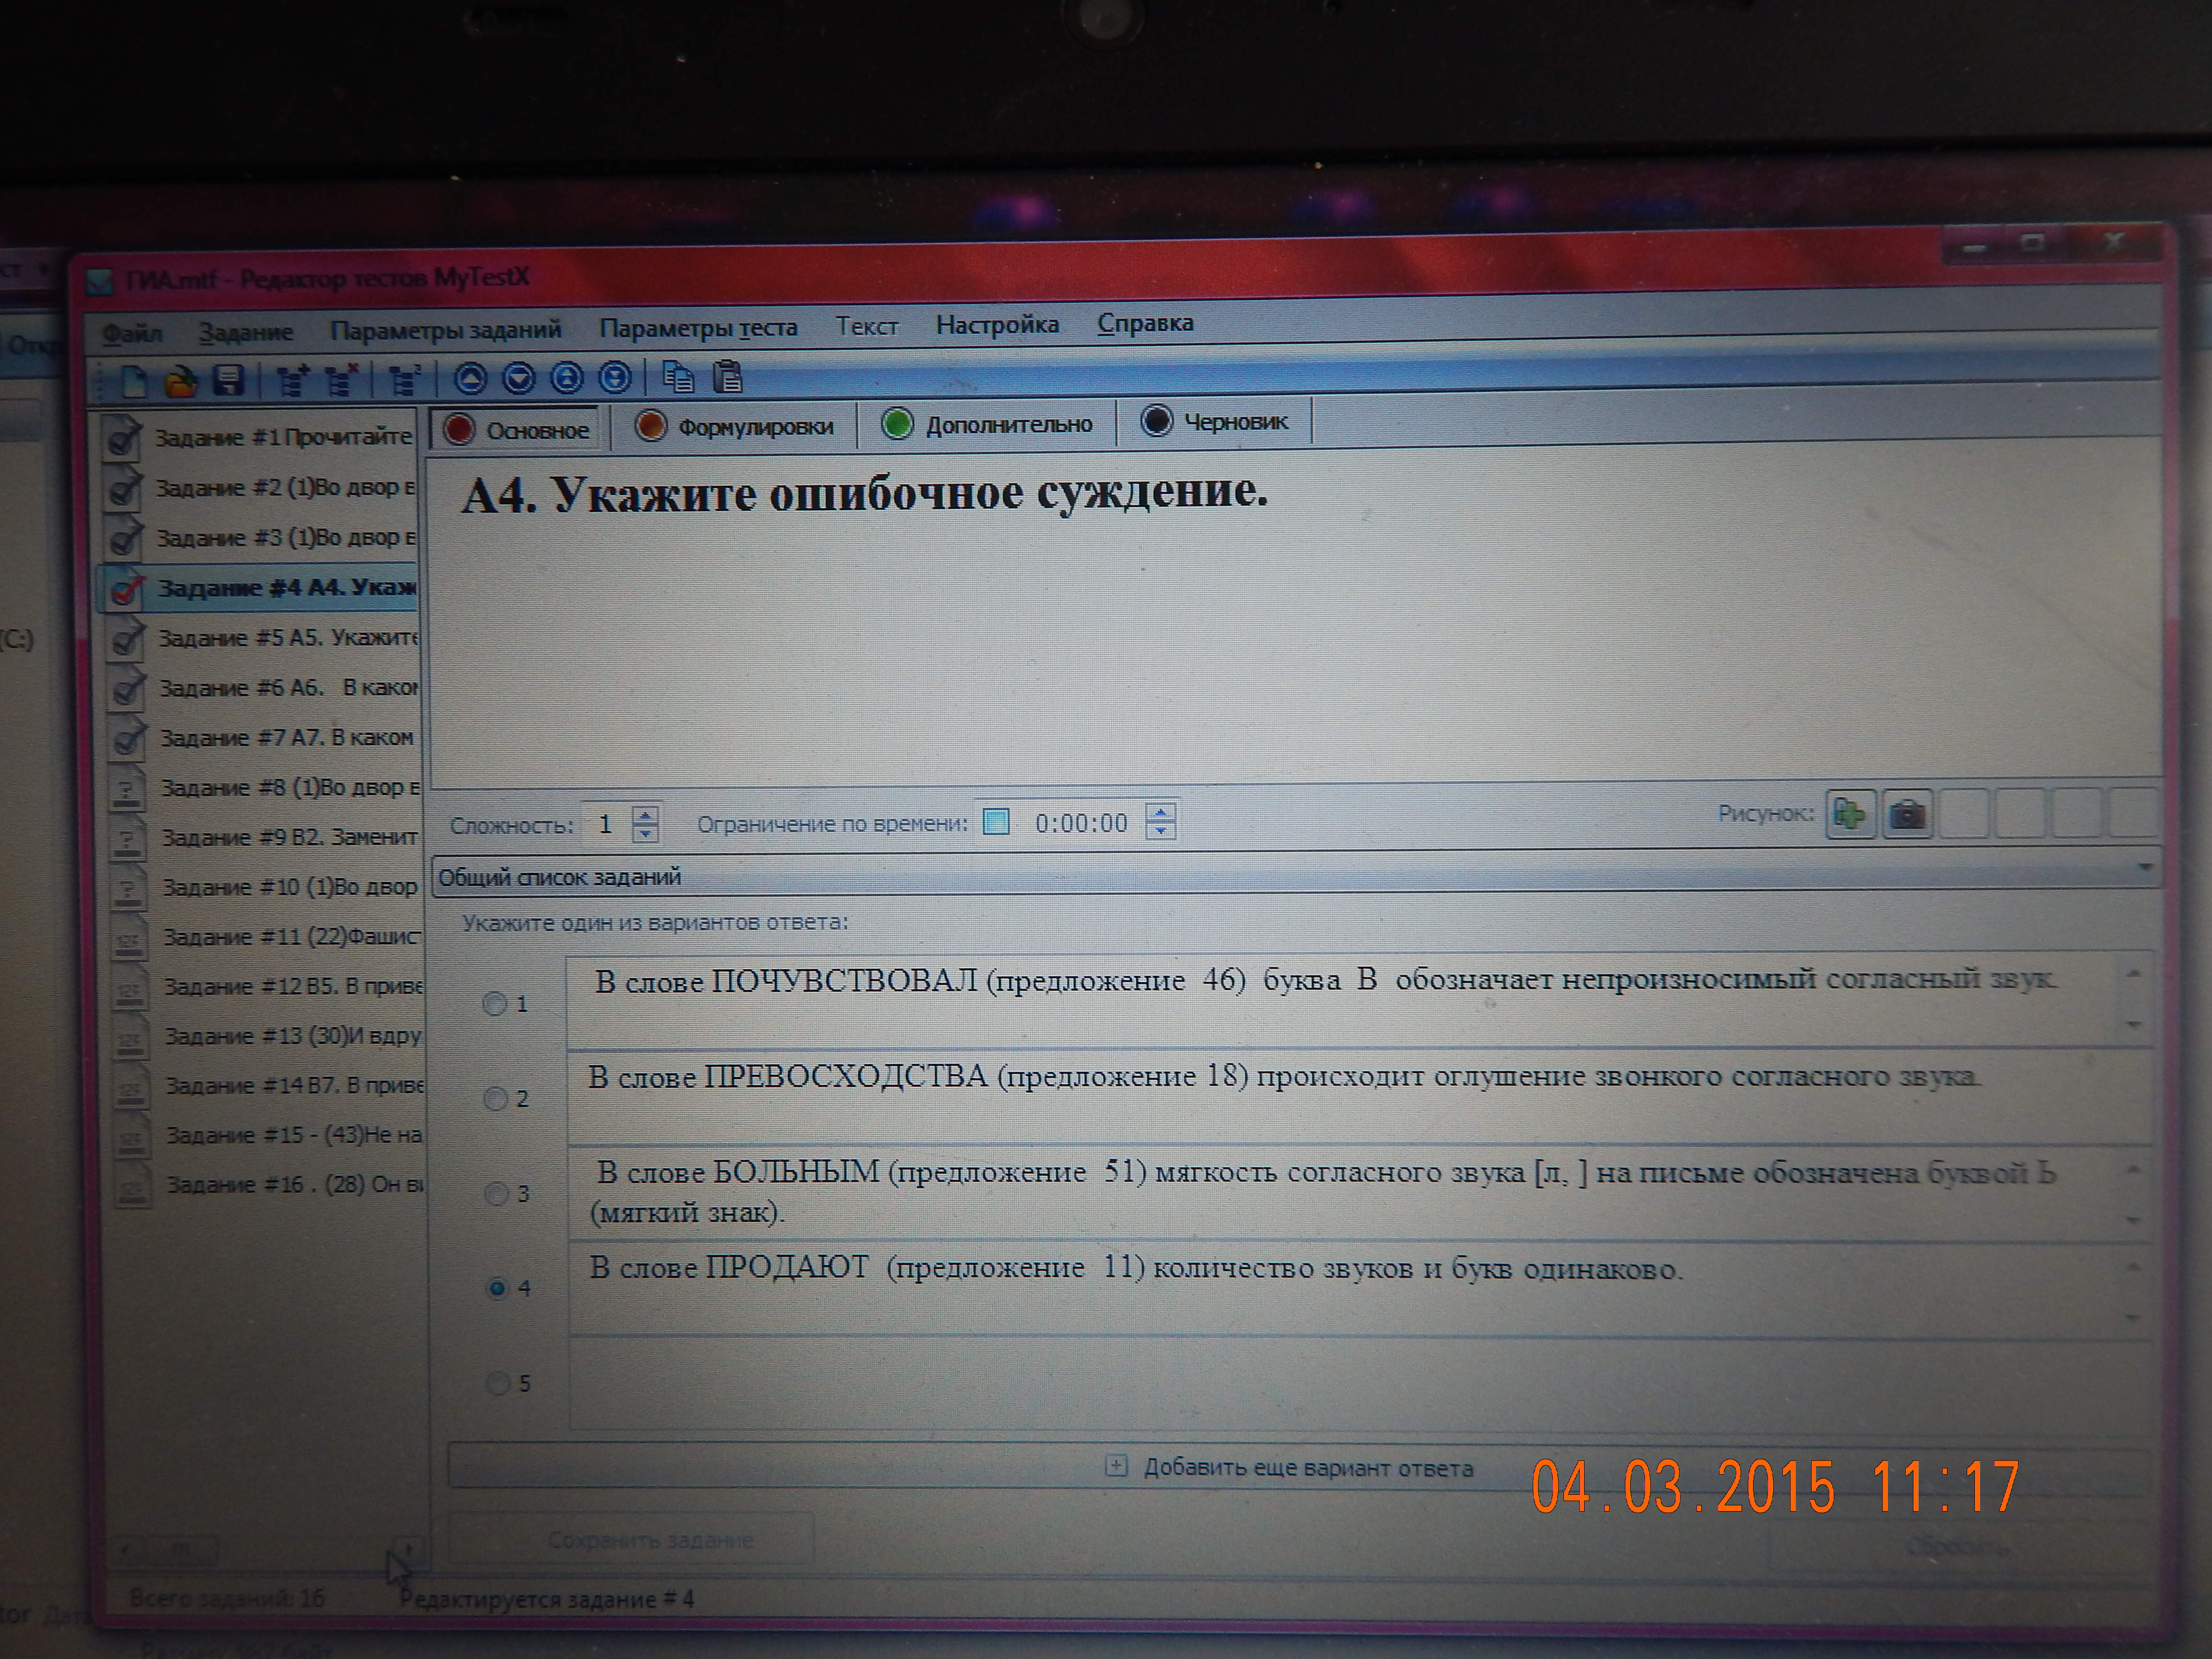 Создание тестов по русскому языку в программе My test X